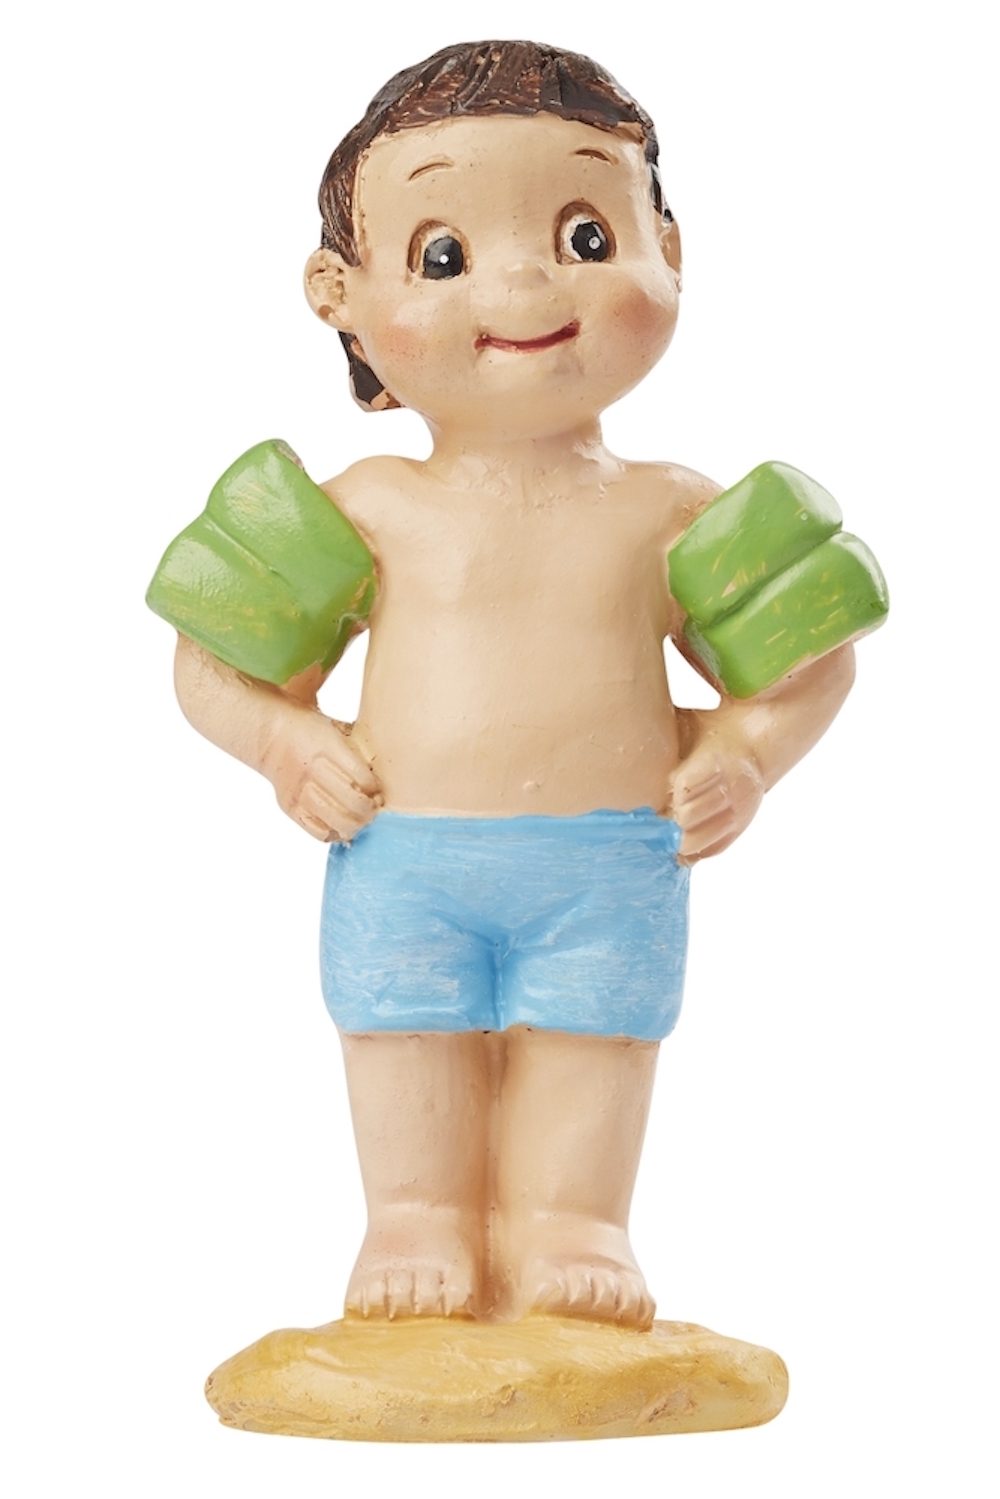 Badefigur Junge mit Schwimmärmel, ca. 7 cm, stehend